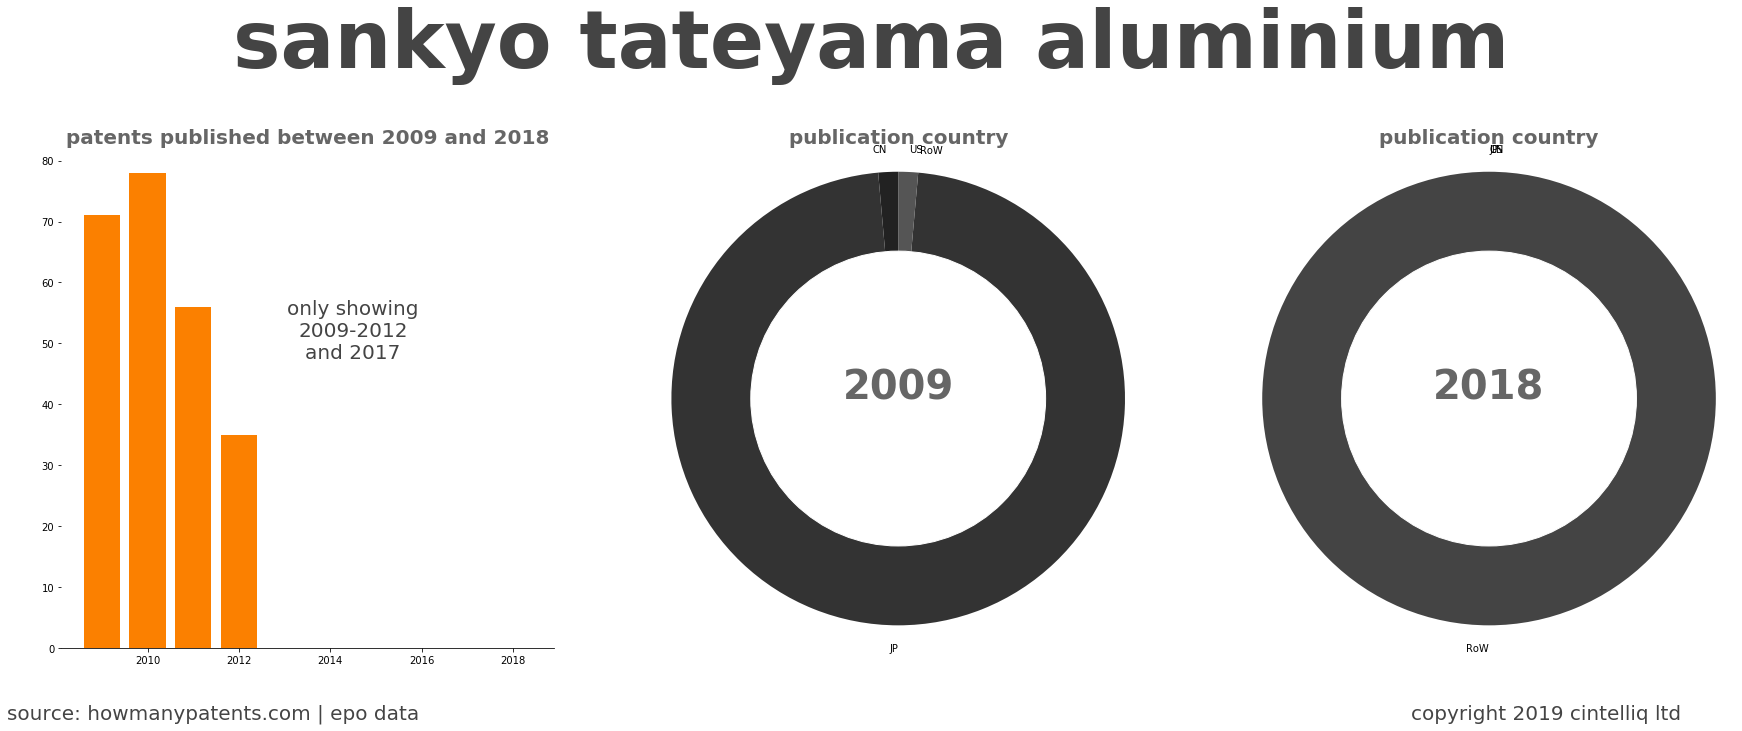 summary of patents for Sankyo Tateyama Aluminium